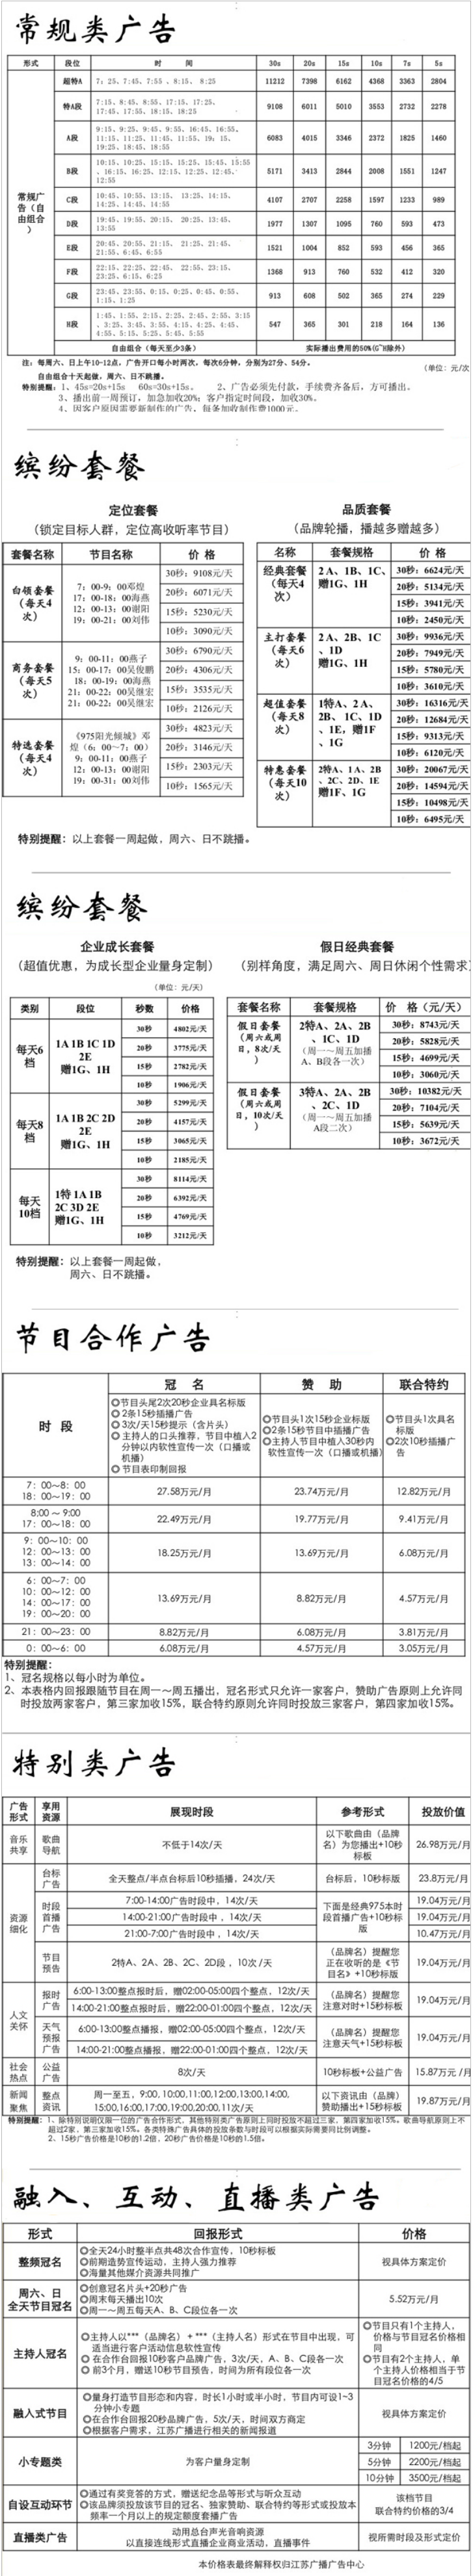 2012江苏人民广播电台经典流行音乐广播FM97.5广告报价表.png